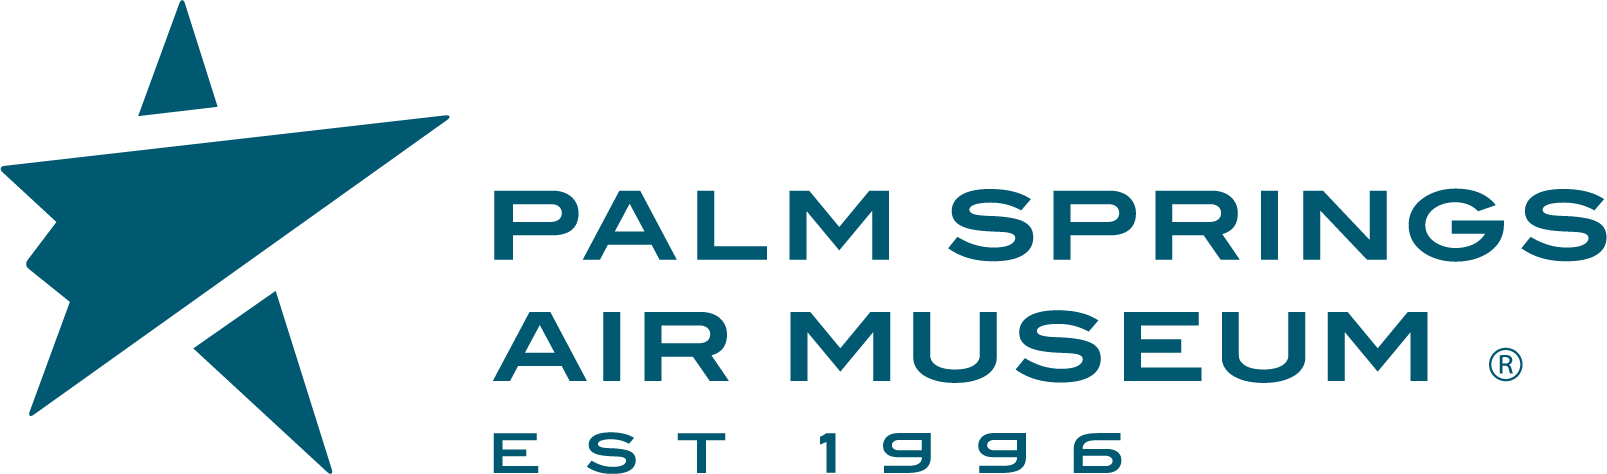 Palm Springs Air Museum logo